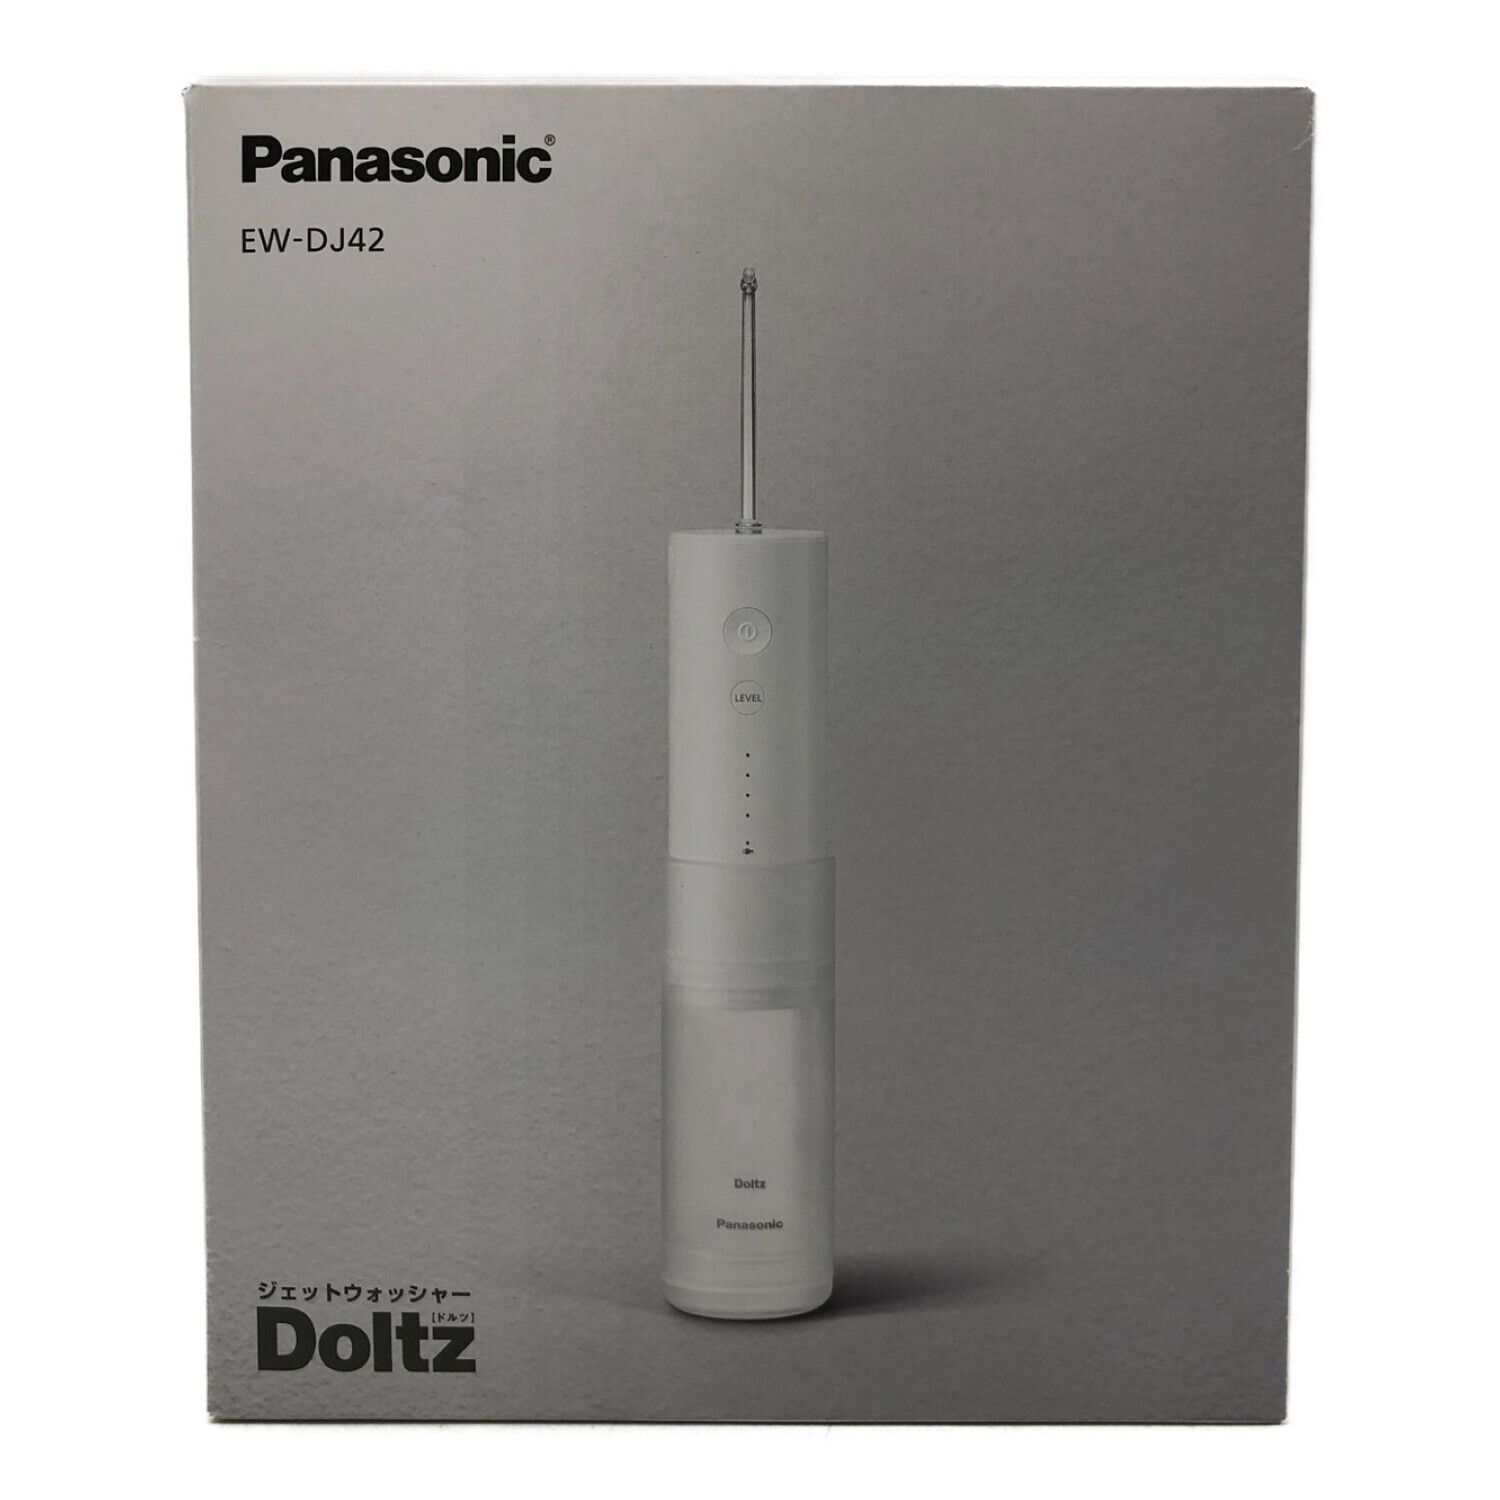 Panasonic (パナソニック) ジェットウォッシャードルツ EW-DJ42-W